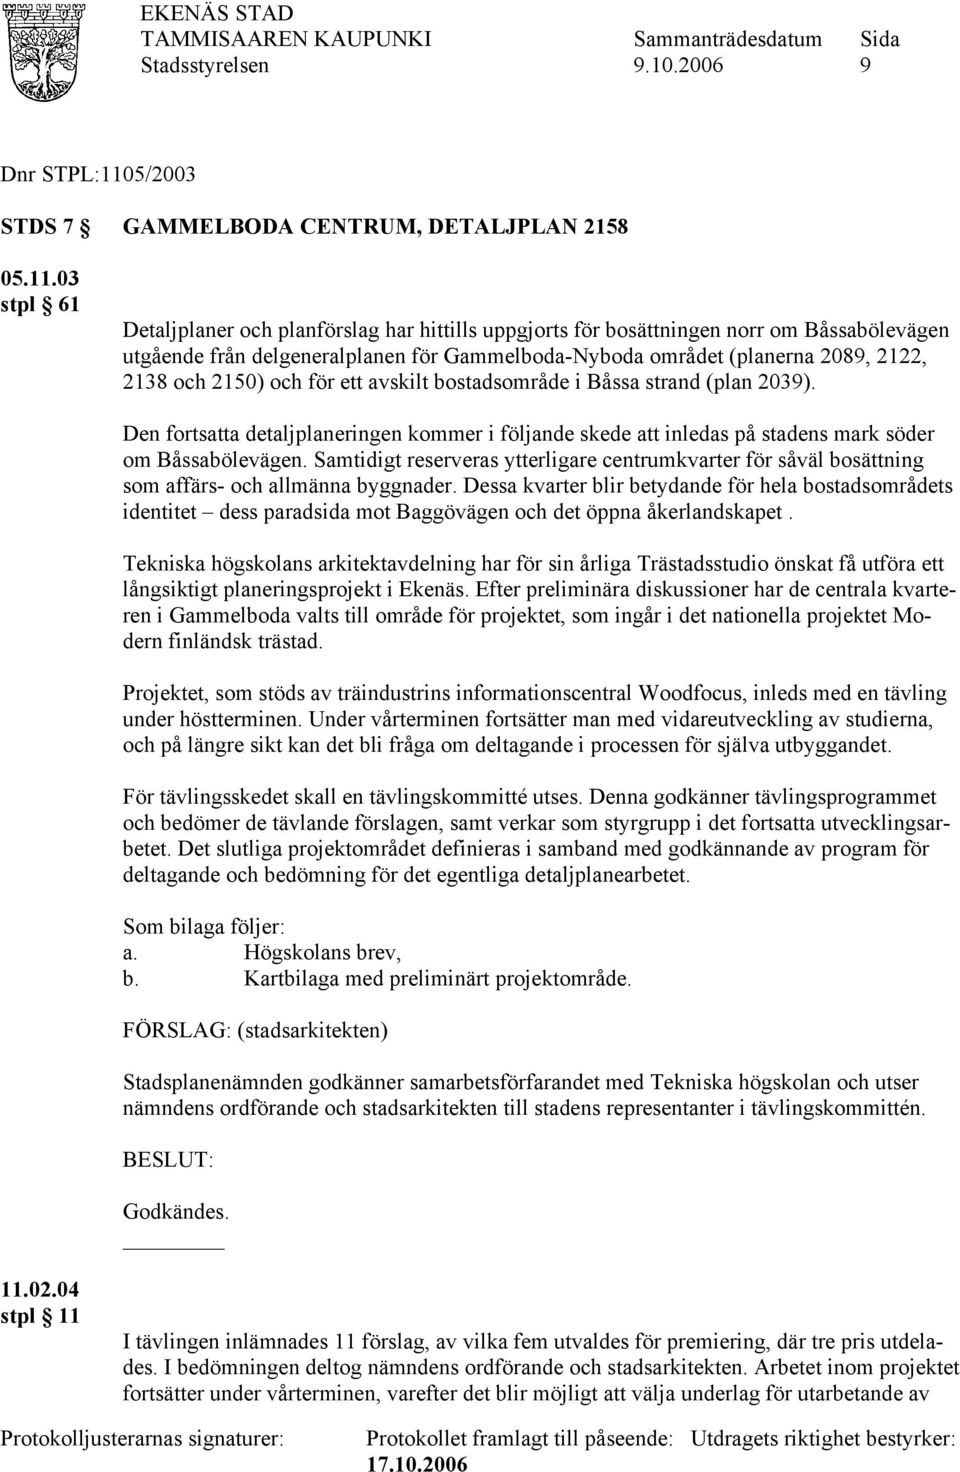 03 stpl 61 Detaljplaner och planförslag har hittills uppgjorts för bosättningen norr om Båssabölevägen utgående från delgeneralplanen för Gammelboda-Nyboda området (planerna 2089, 2122, 2138 och